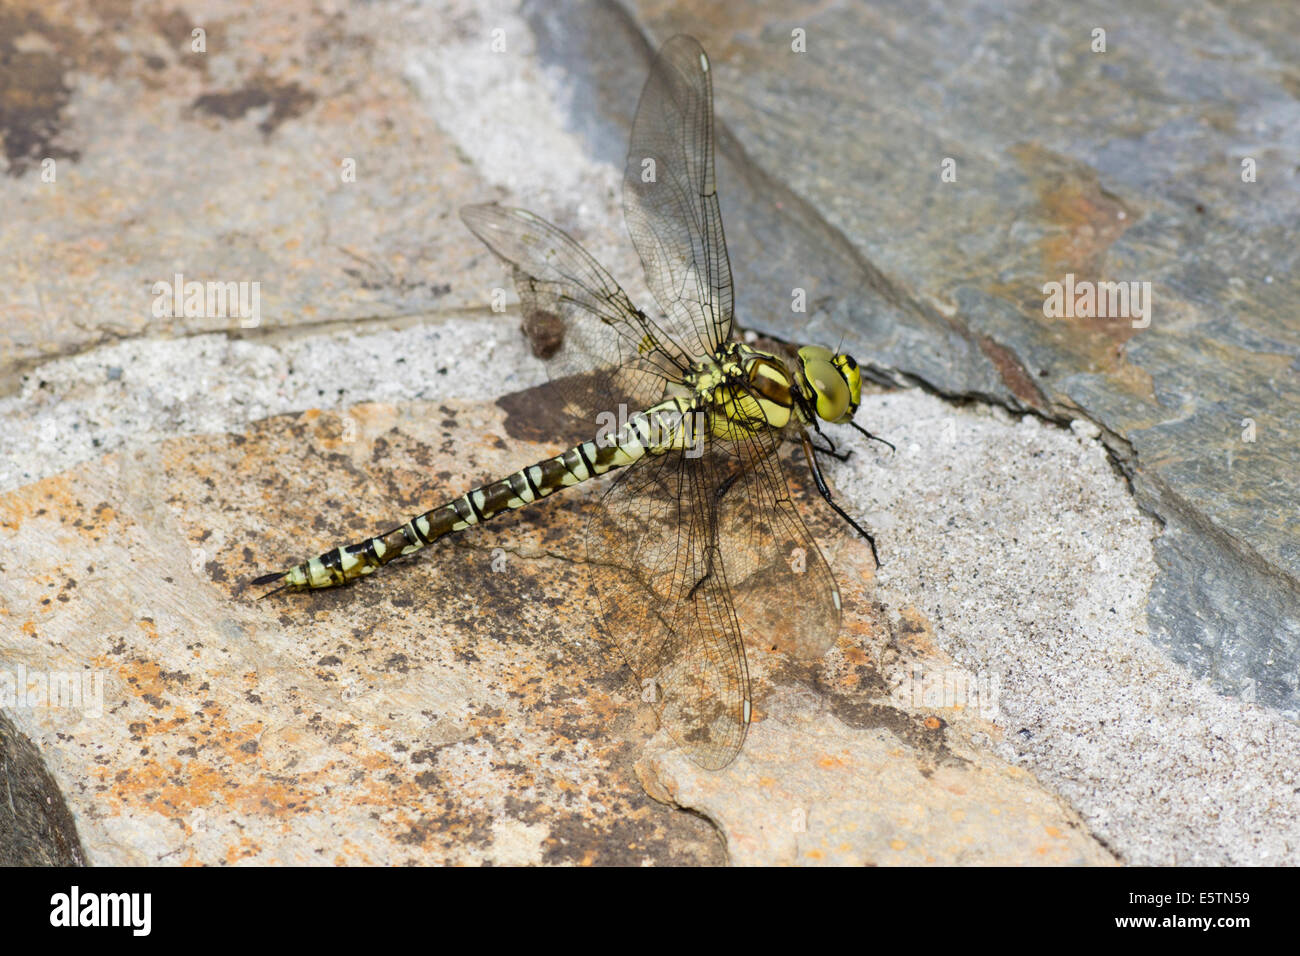 Sur femenino hawker dragonfly, Aeshna cyanea, descansando sobre vestidos en piedra Foto de stock